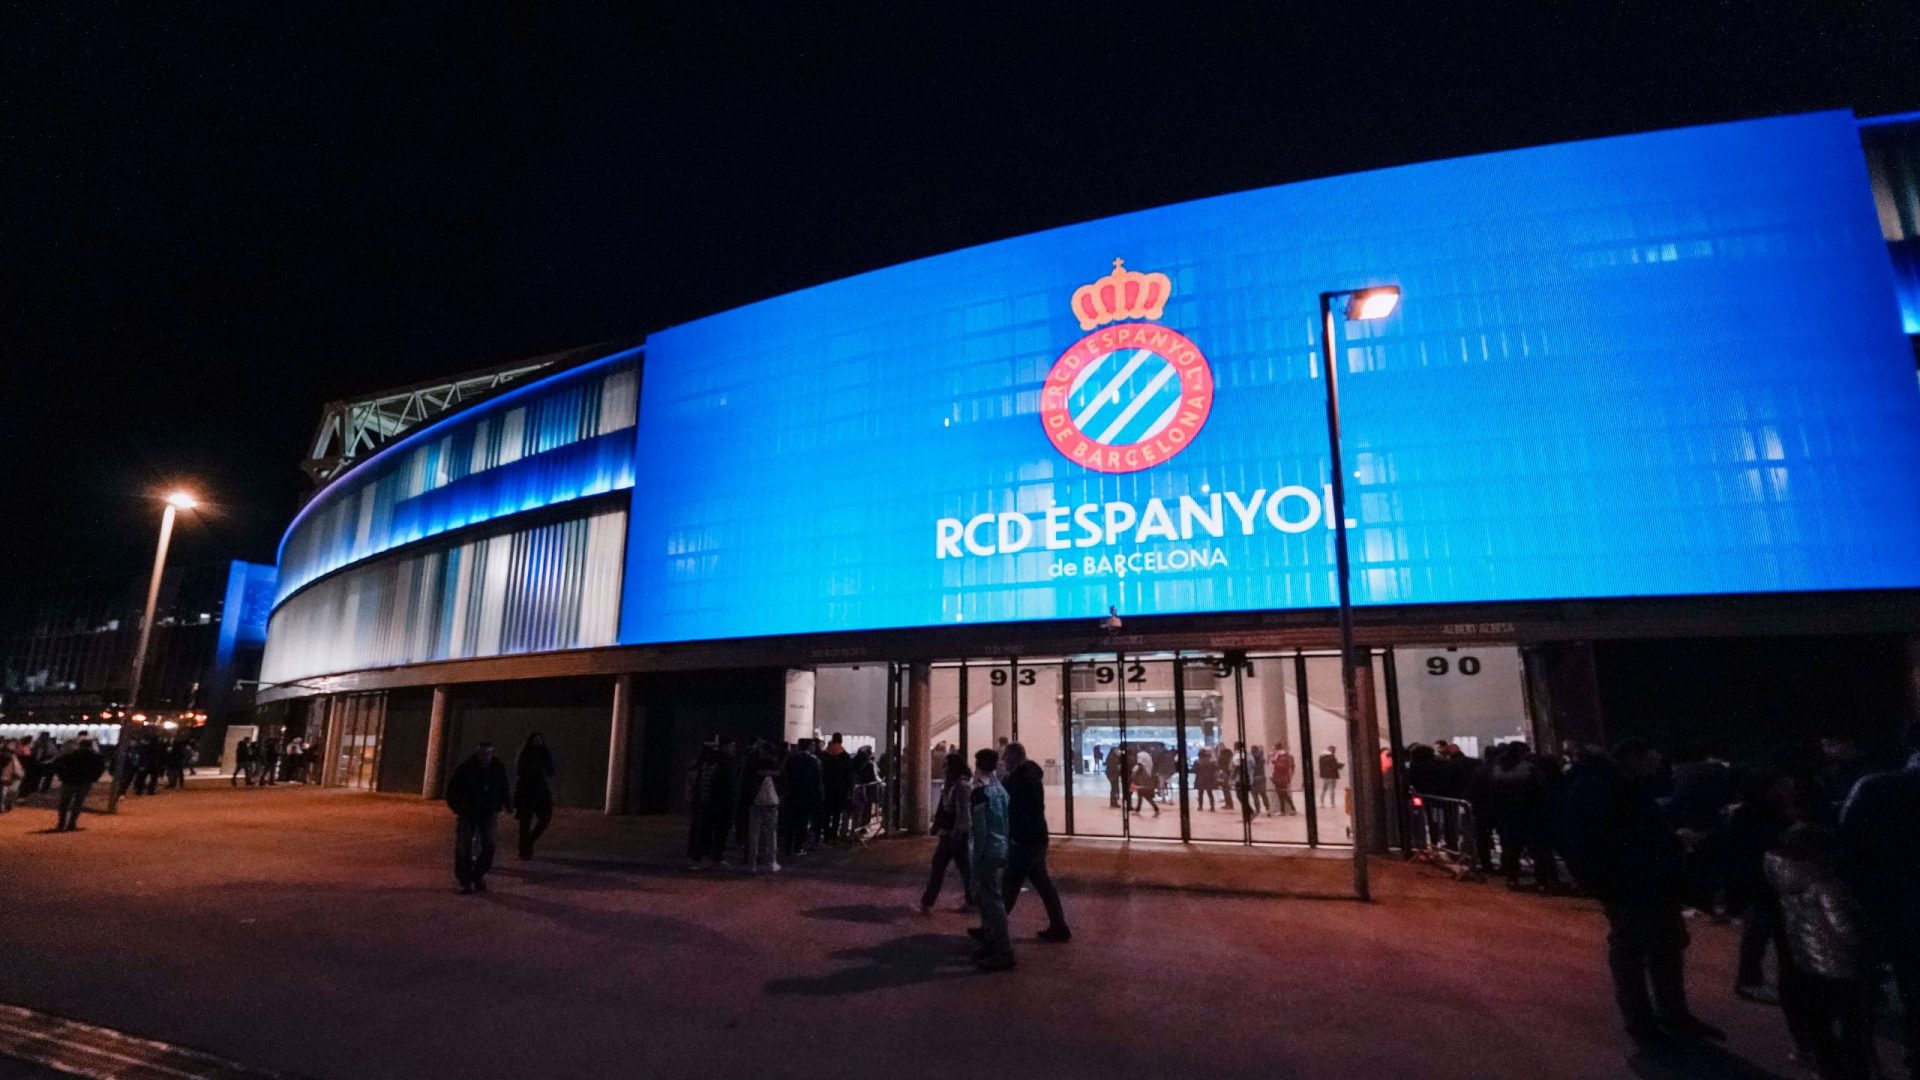 RCD Espanyol by Leddream Group